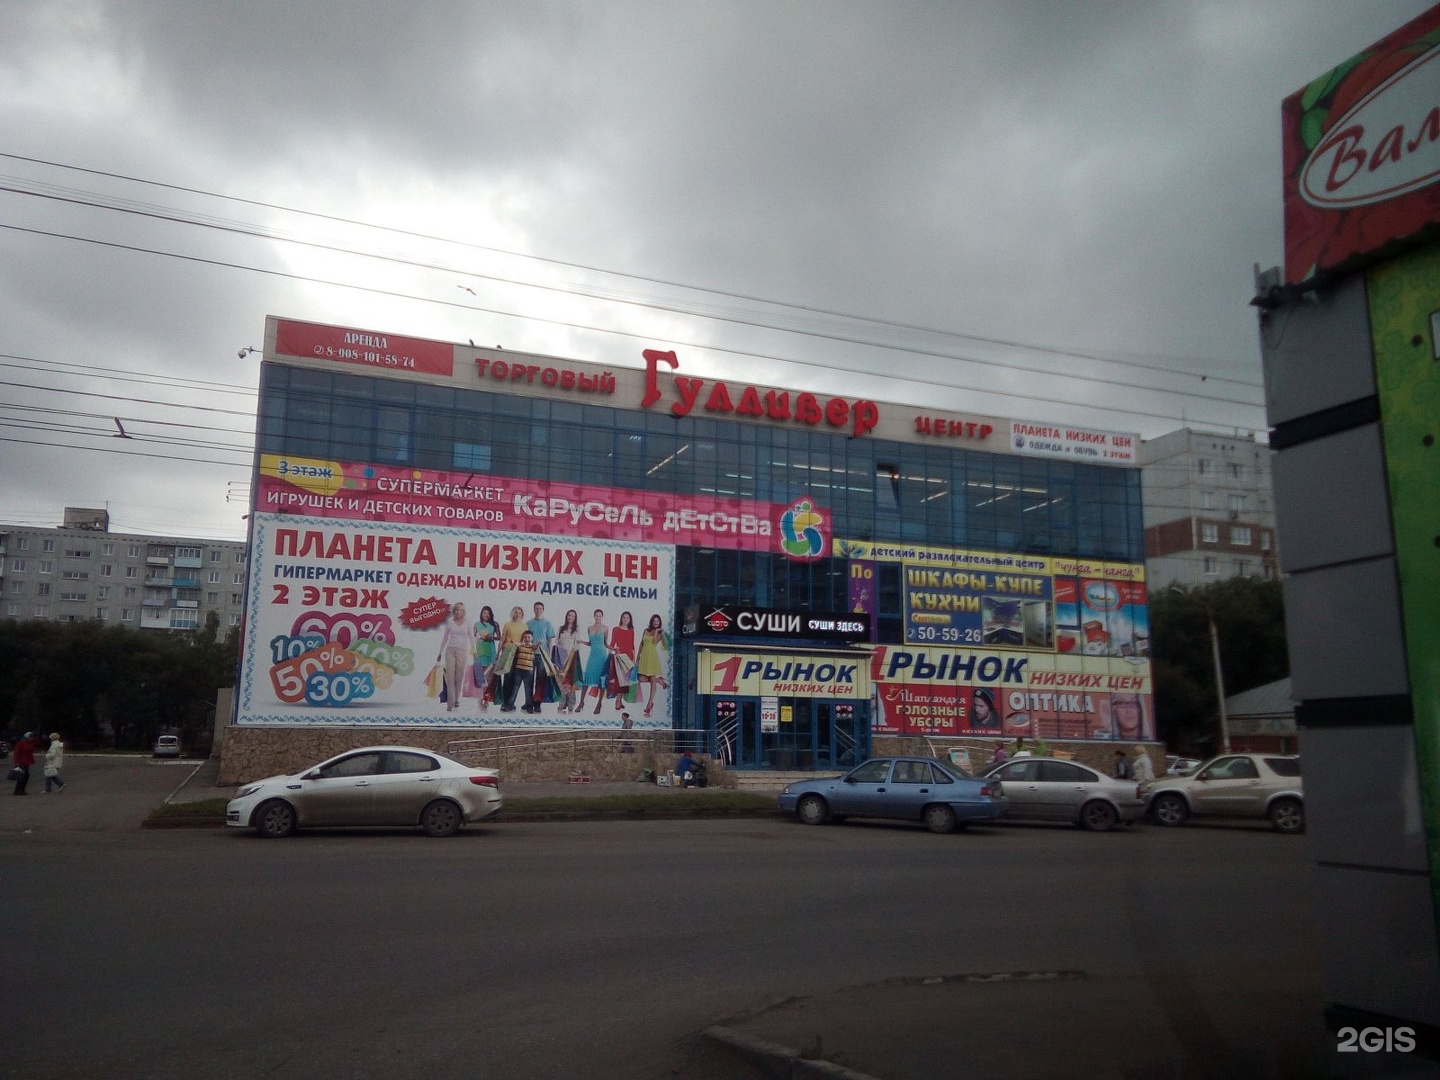 Торговый центр Гулливер Омск